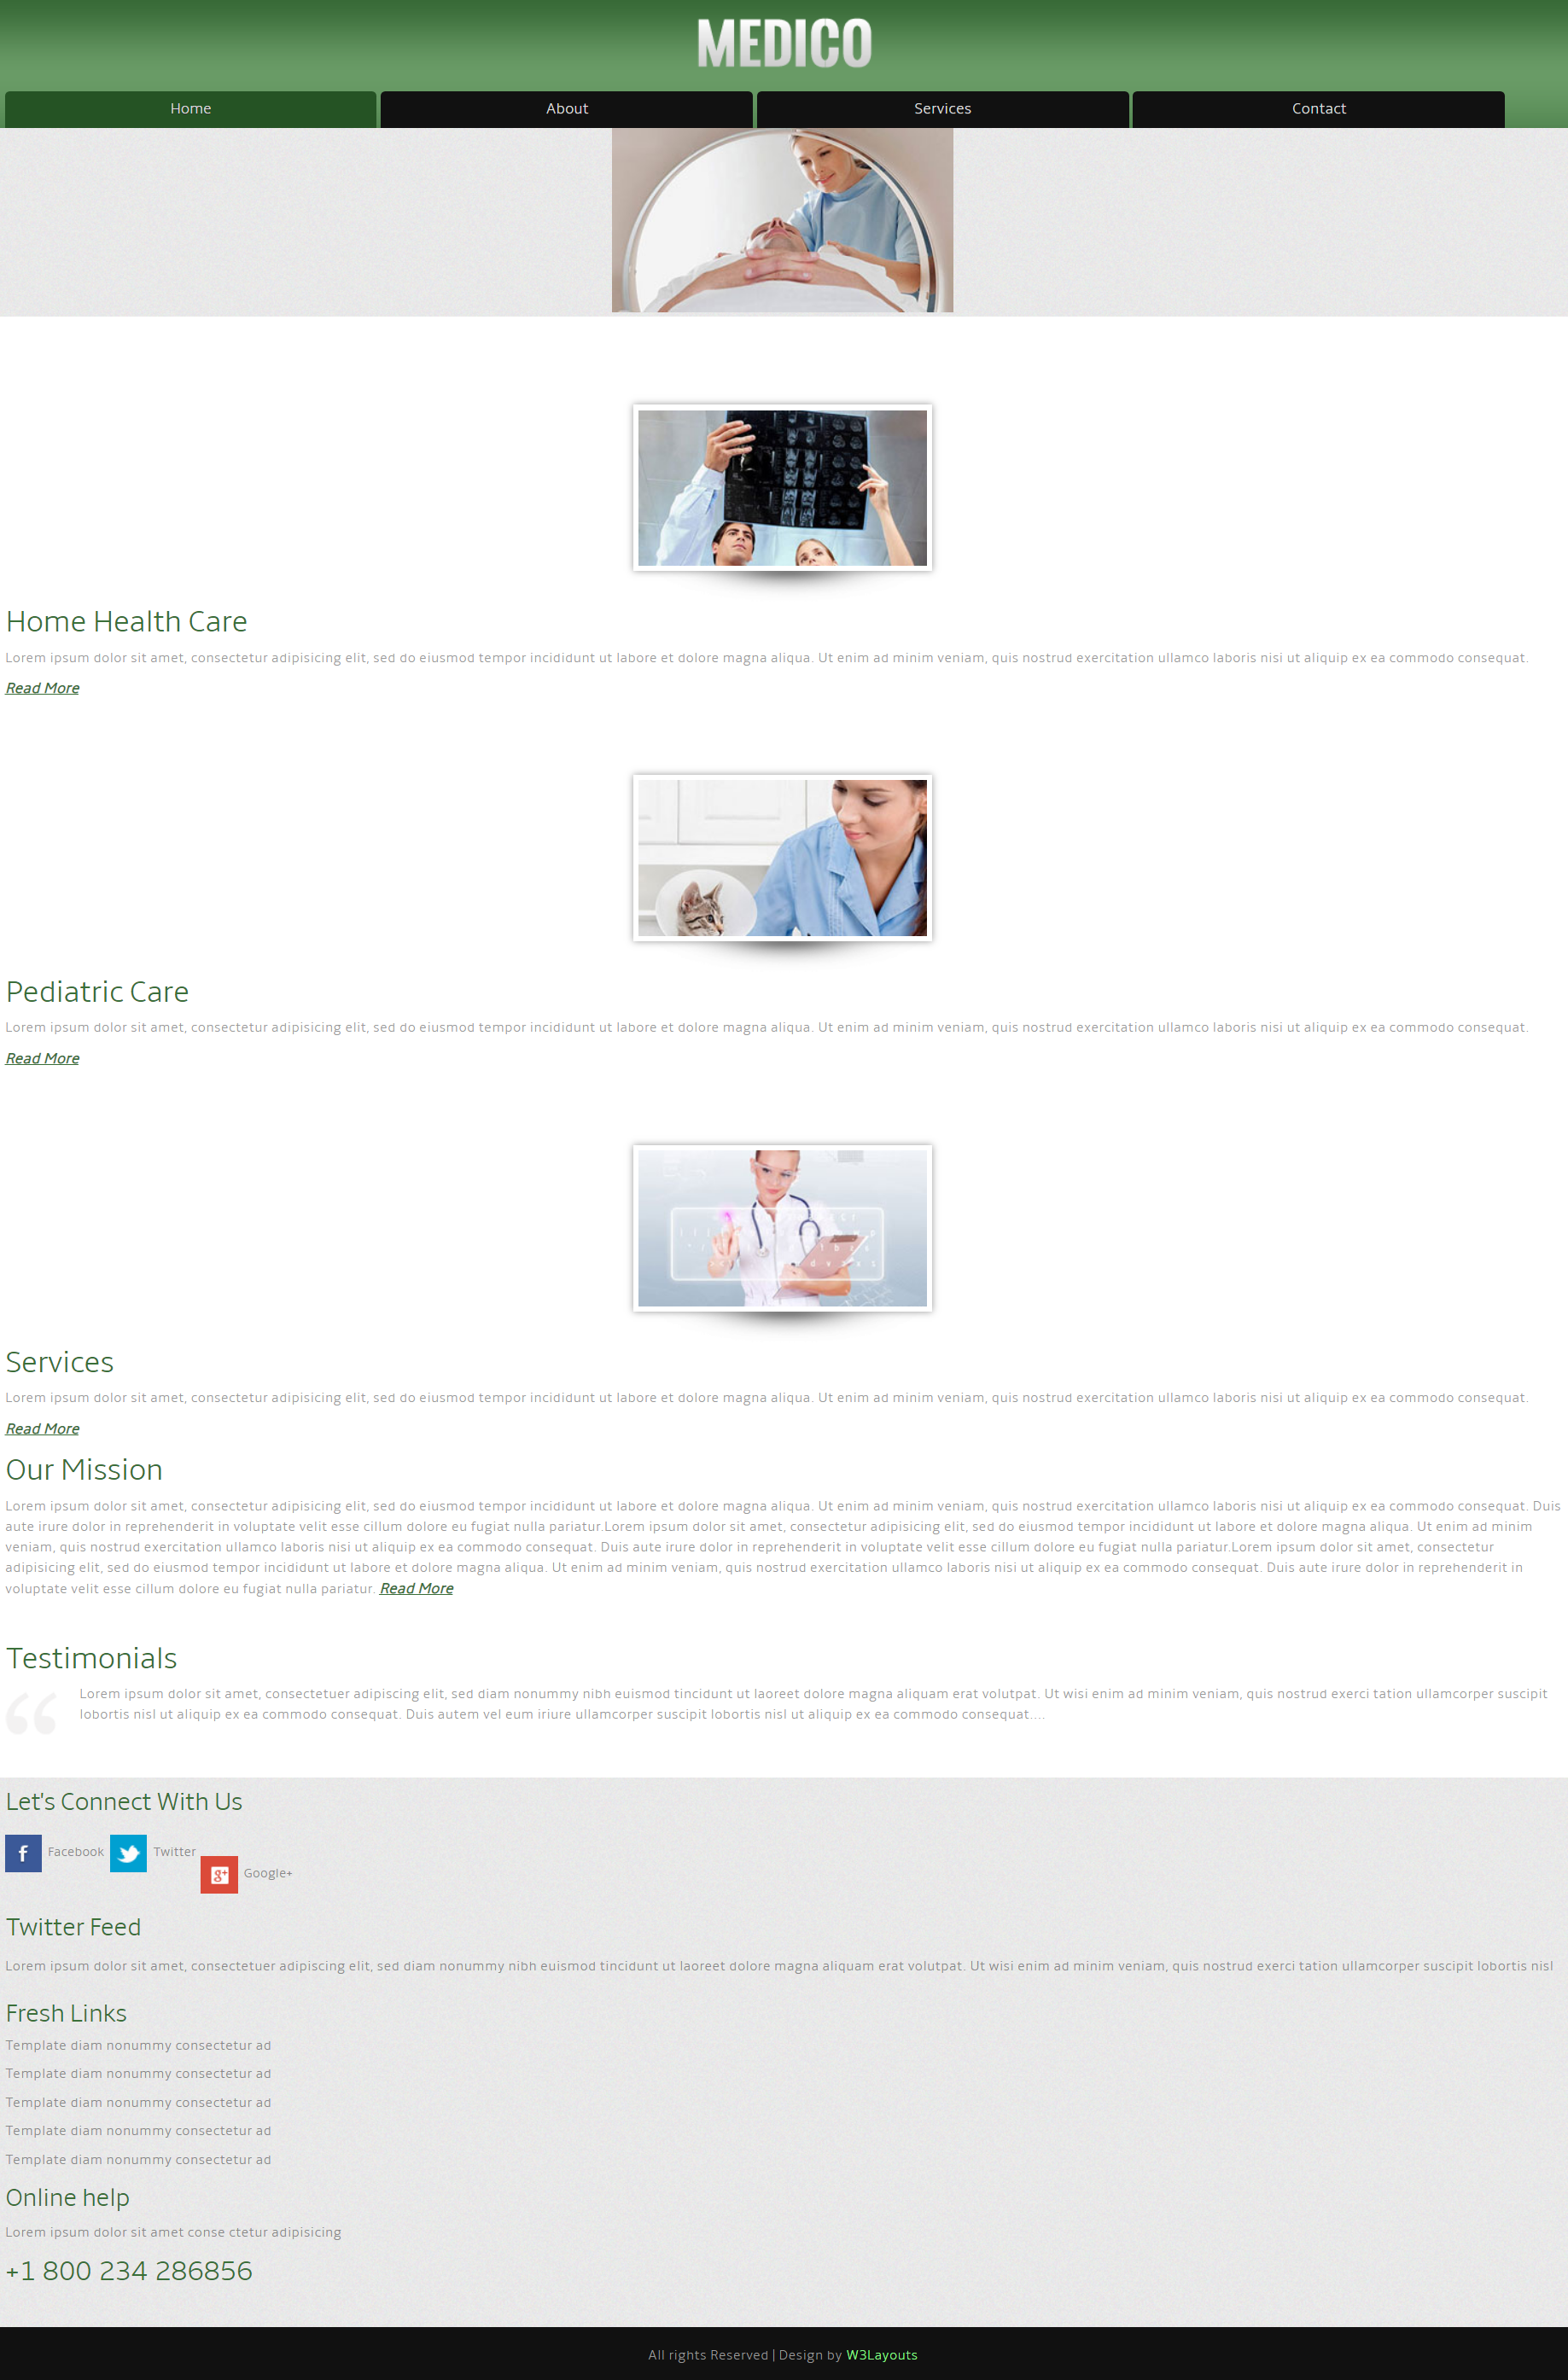 绿色宽屏风格响应式医疗服务动态网页模板